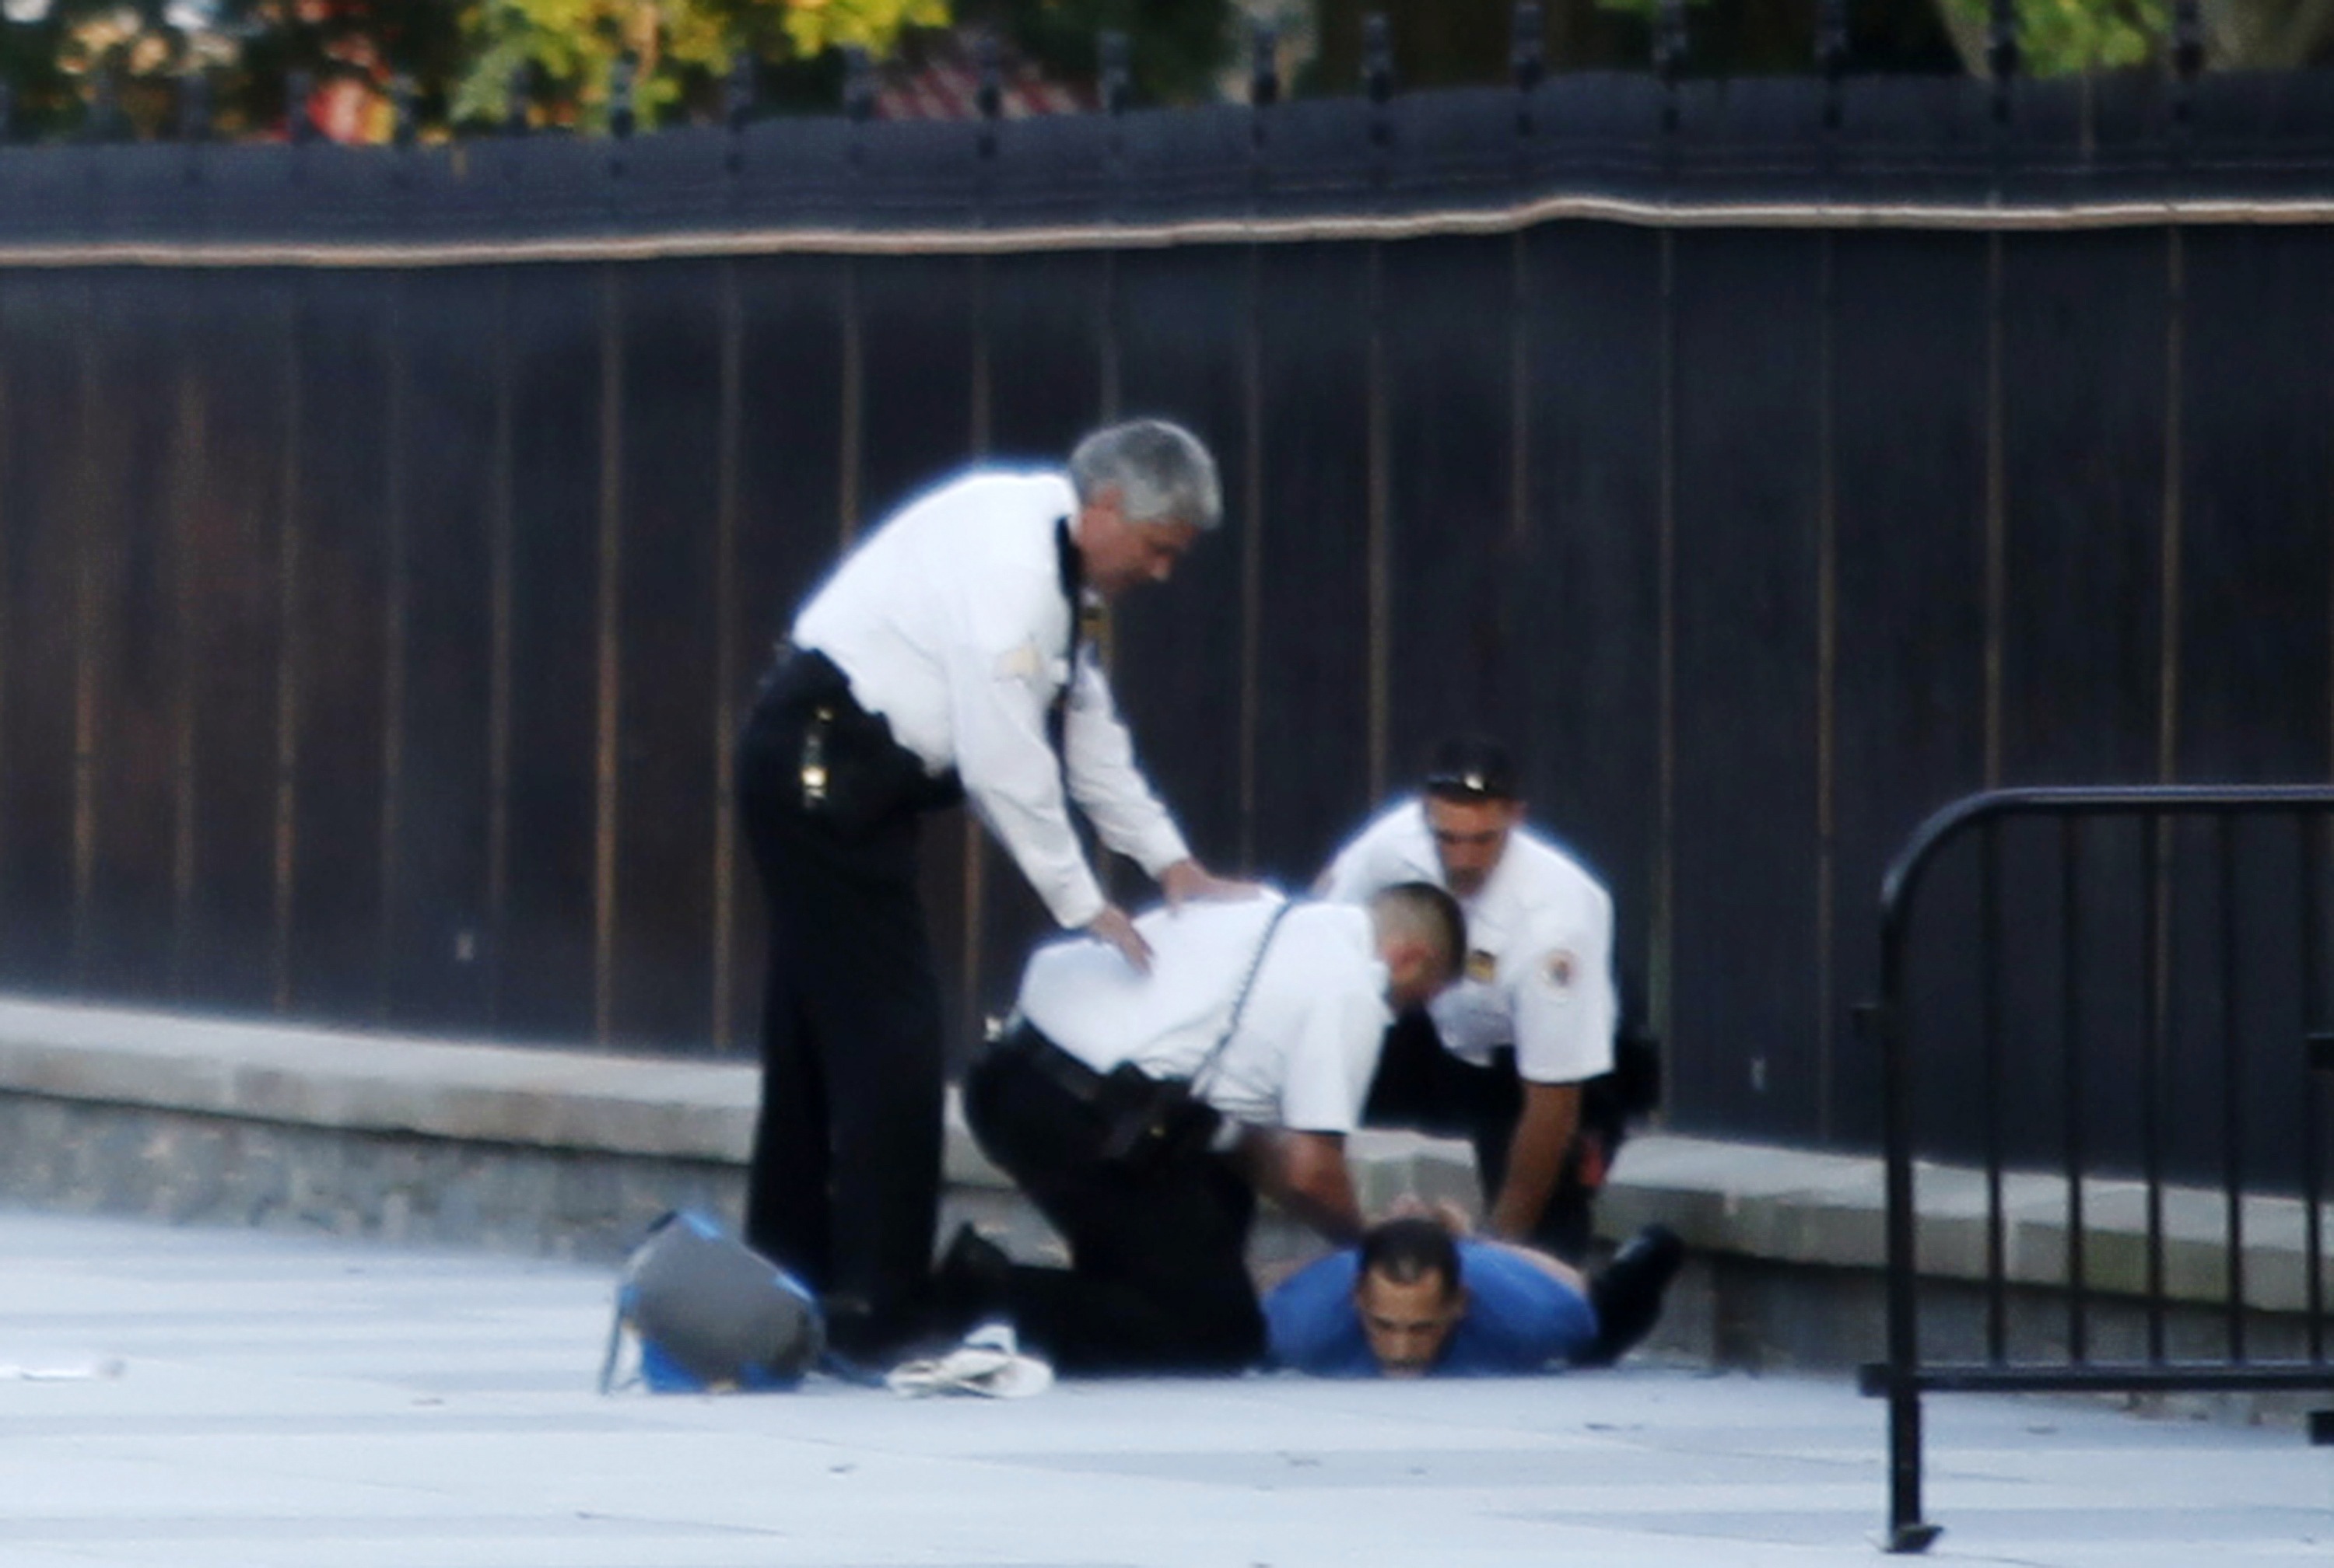 Ο άνδρας που πετούσε κροτίδες στο Λευκό Οίκο συνελήφθη σε χρόνο... dt - ΦΩΤΟΓΡΑΦΙΑ REUTERS